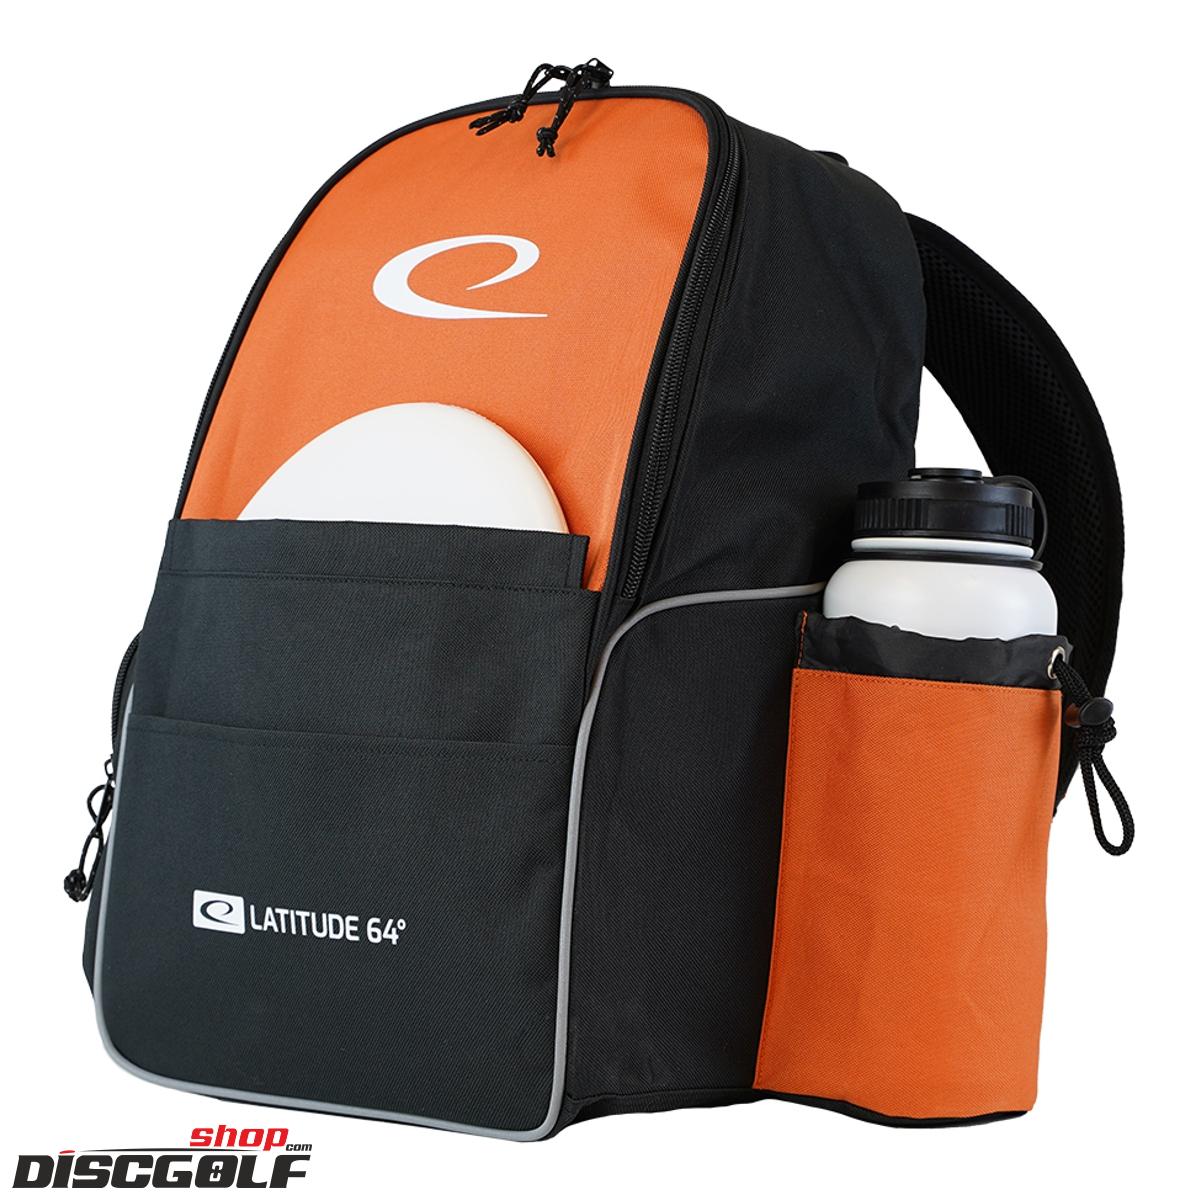 Latitude 64º Base Backpack - Černo-oranžová/Black-orange (discgolf)